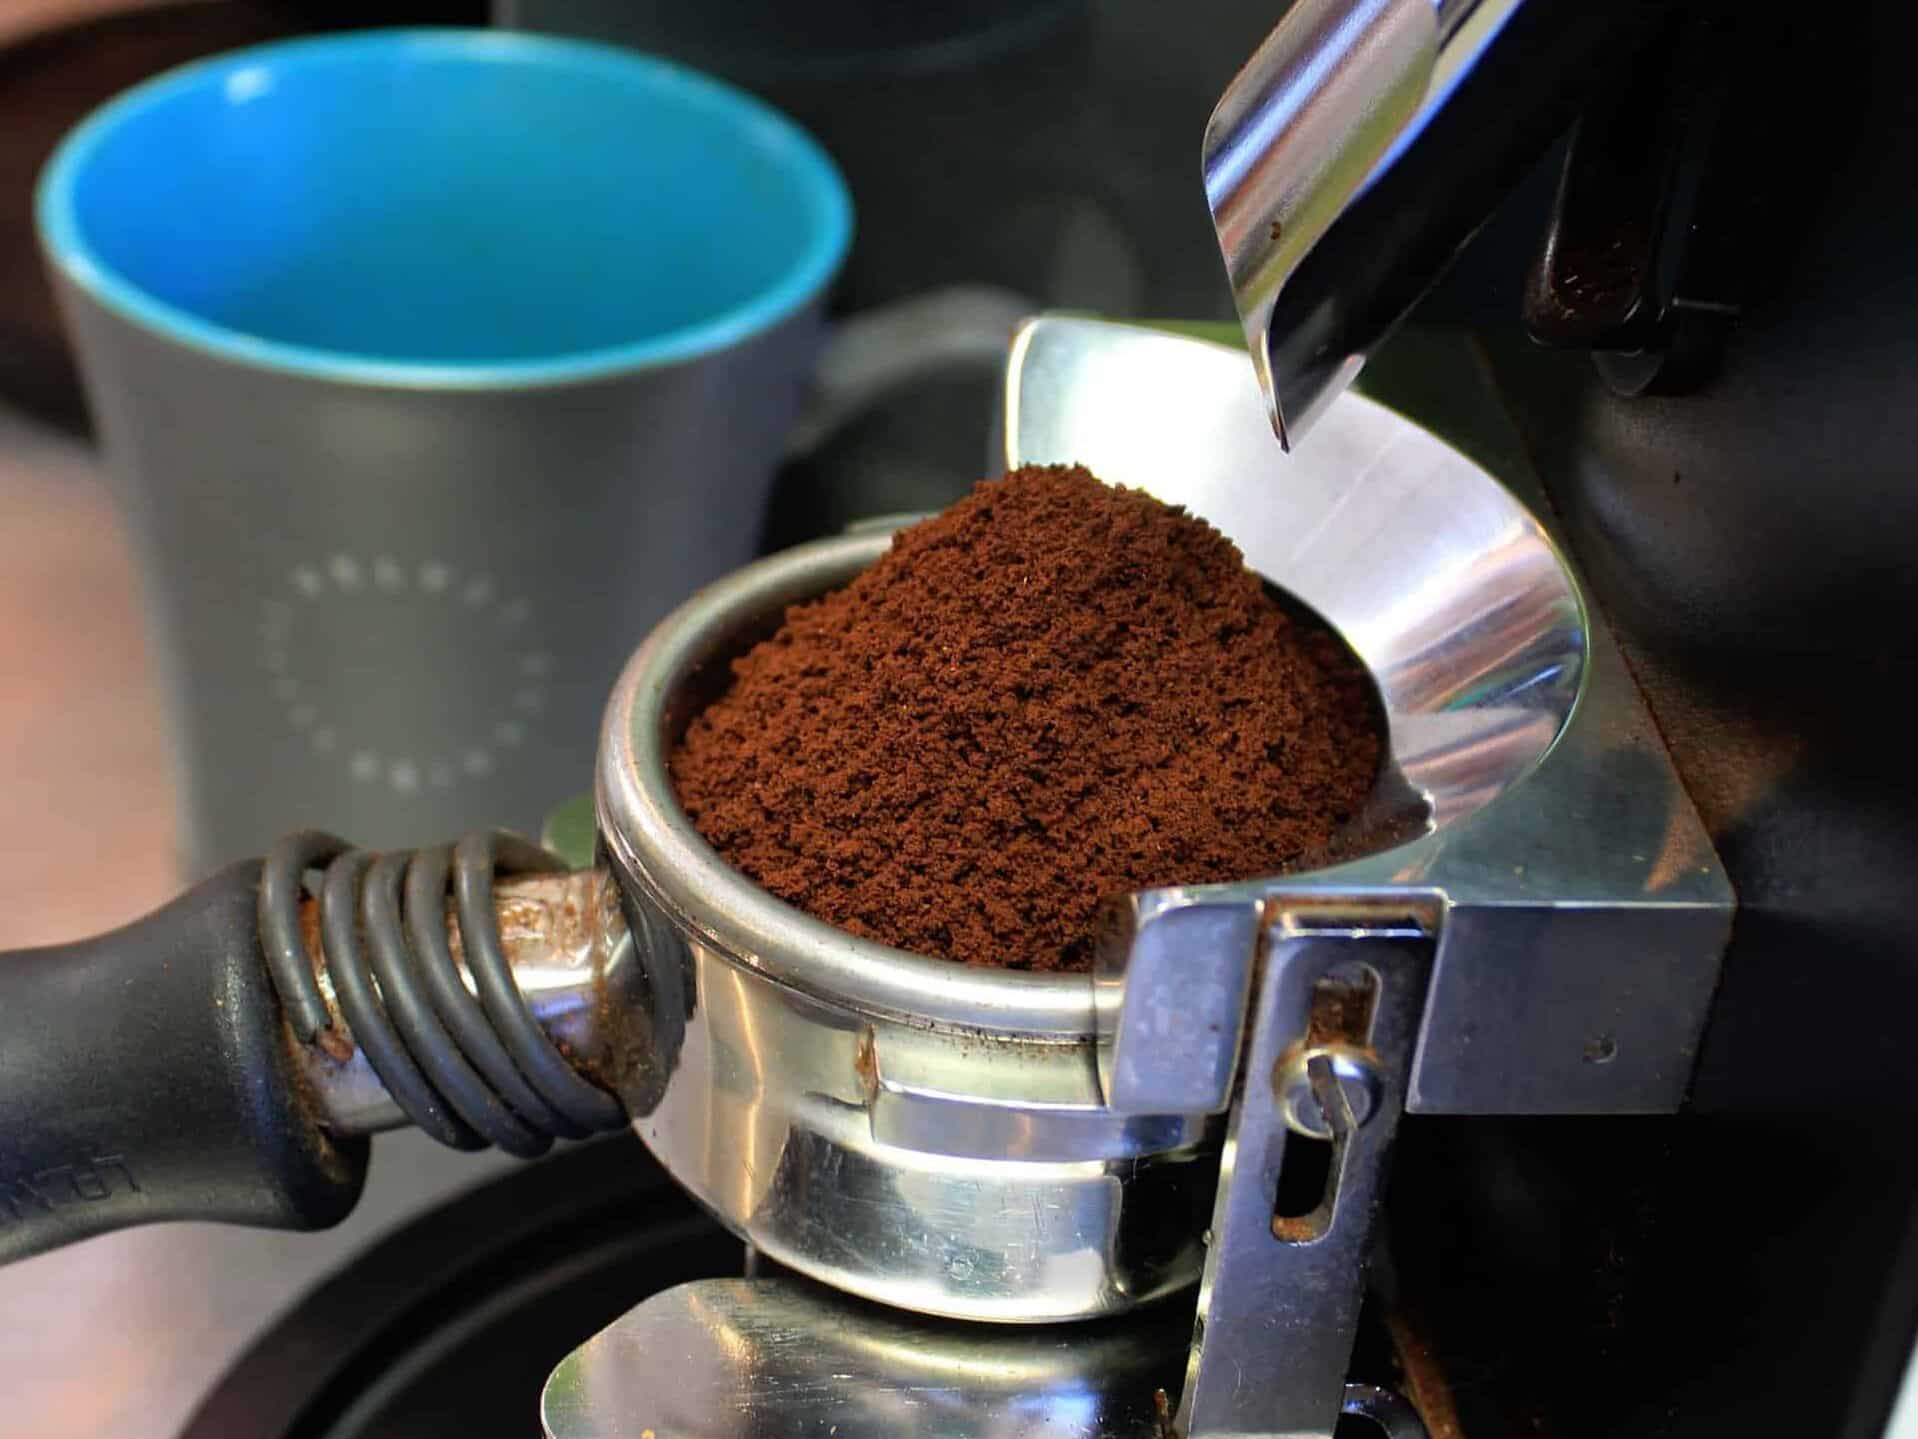 Fine ground coffee
